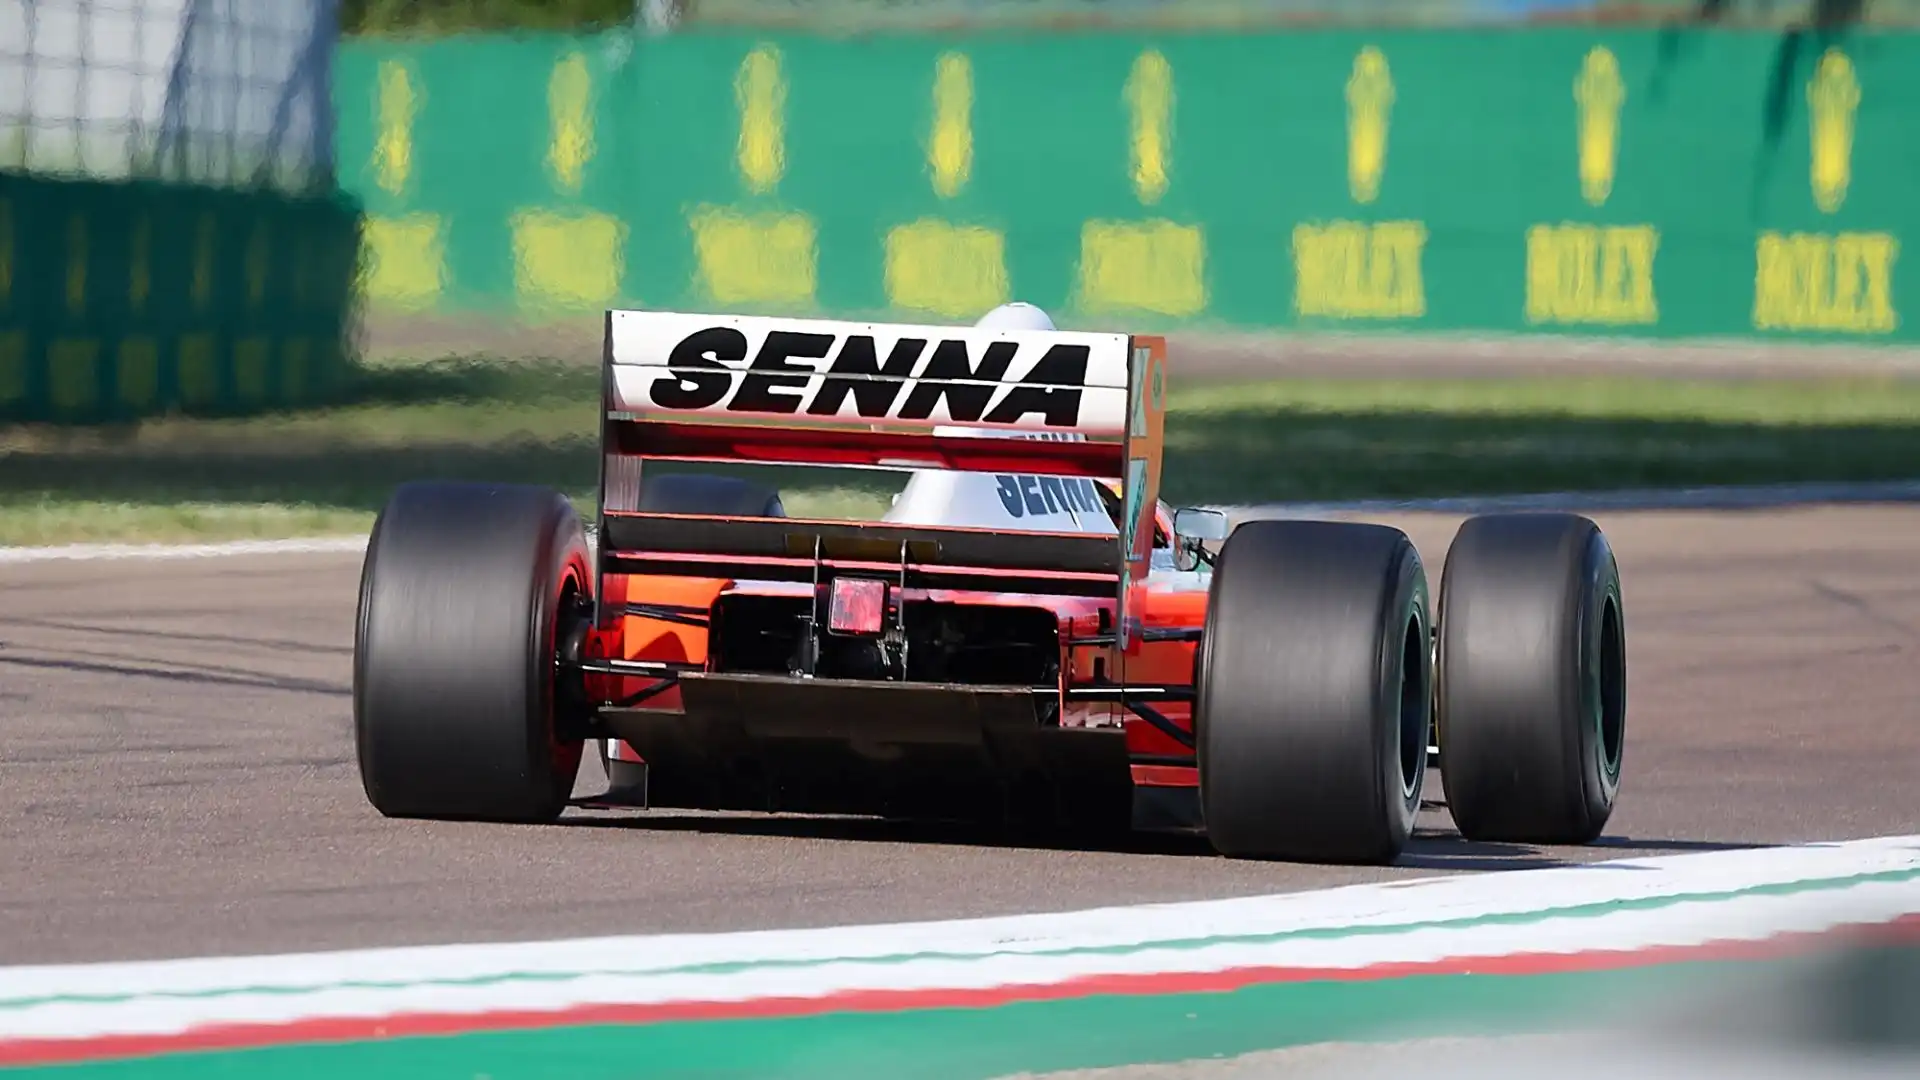 Sull'alettone posteriore le scritte "Senna" e "Forever"